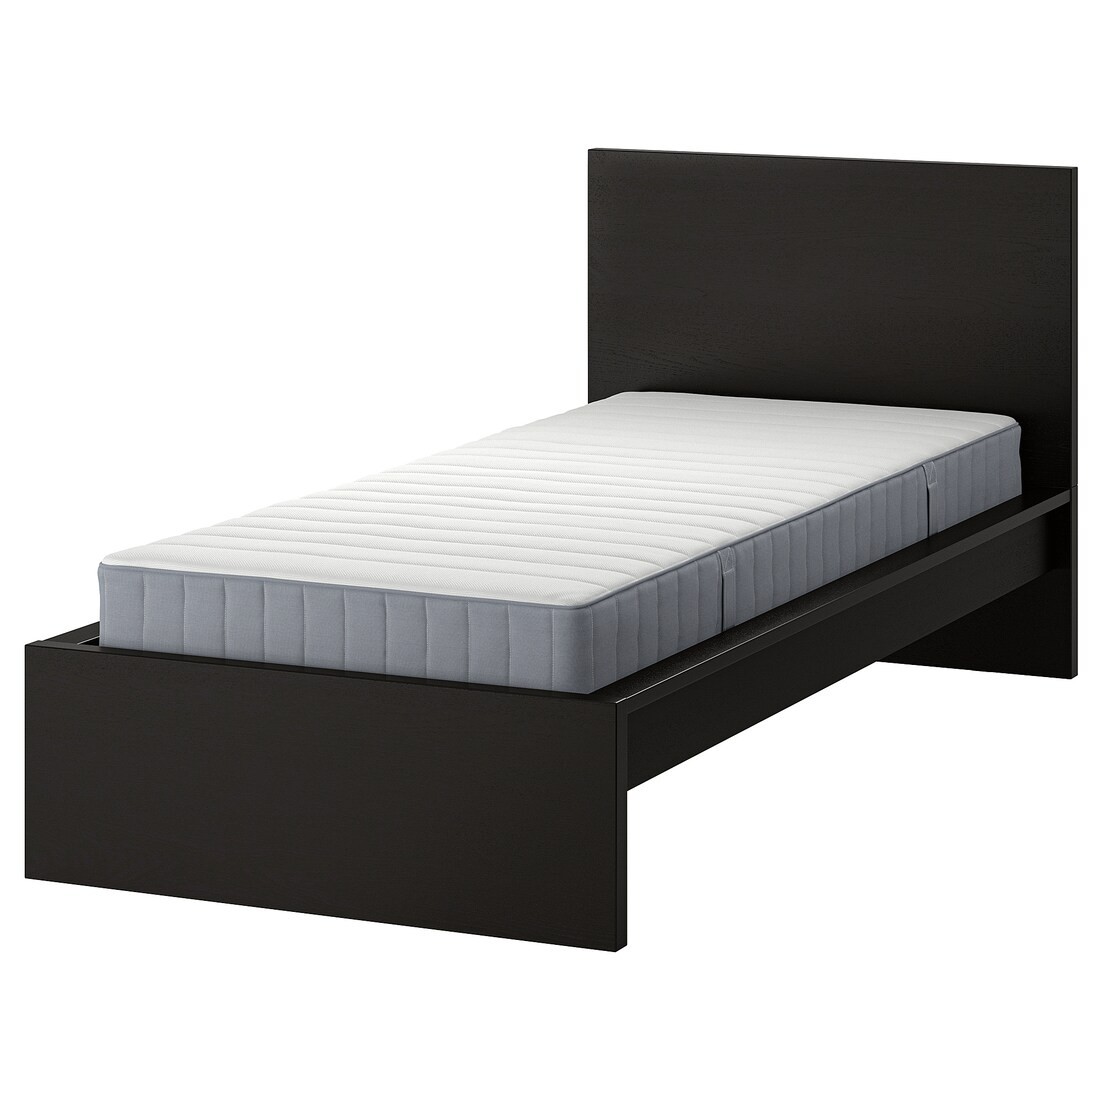 MALM Кровать с матрасом, черно-коричневый / Valevåg жесткий, 90x200 см